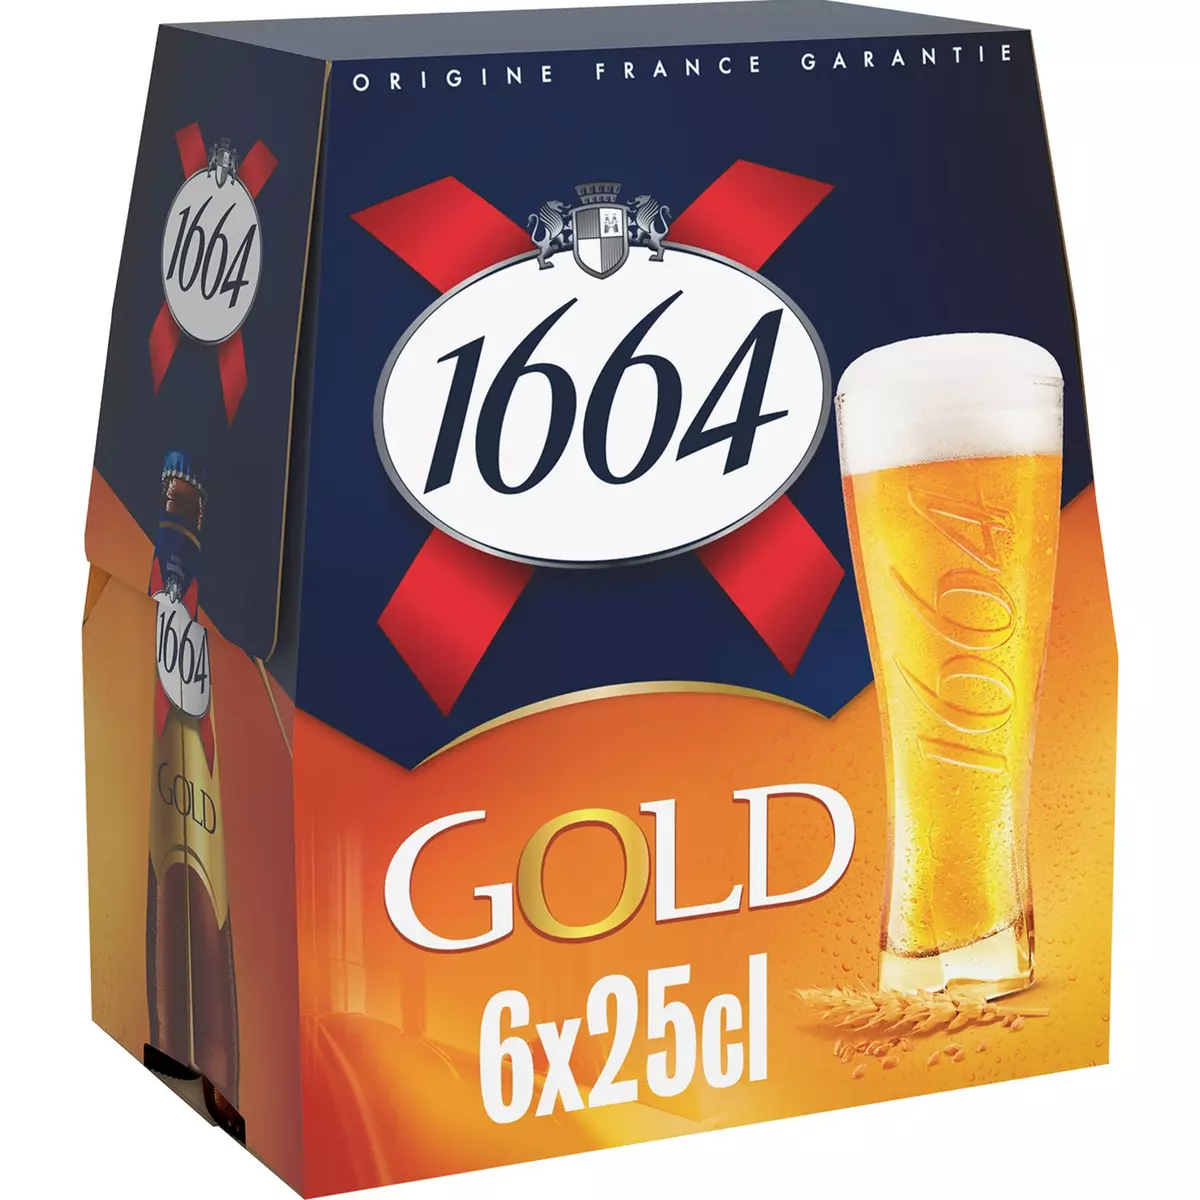 1664 Bière blonde gold 6,1% bouteilles 6x25cl